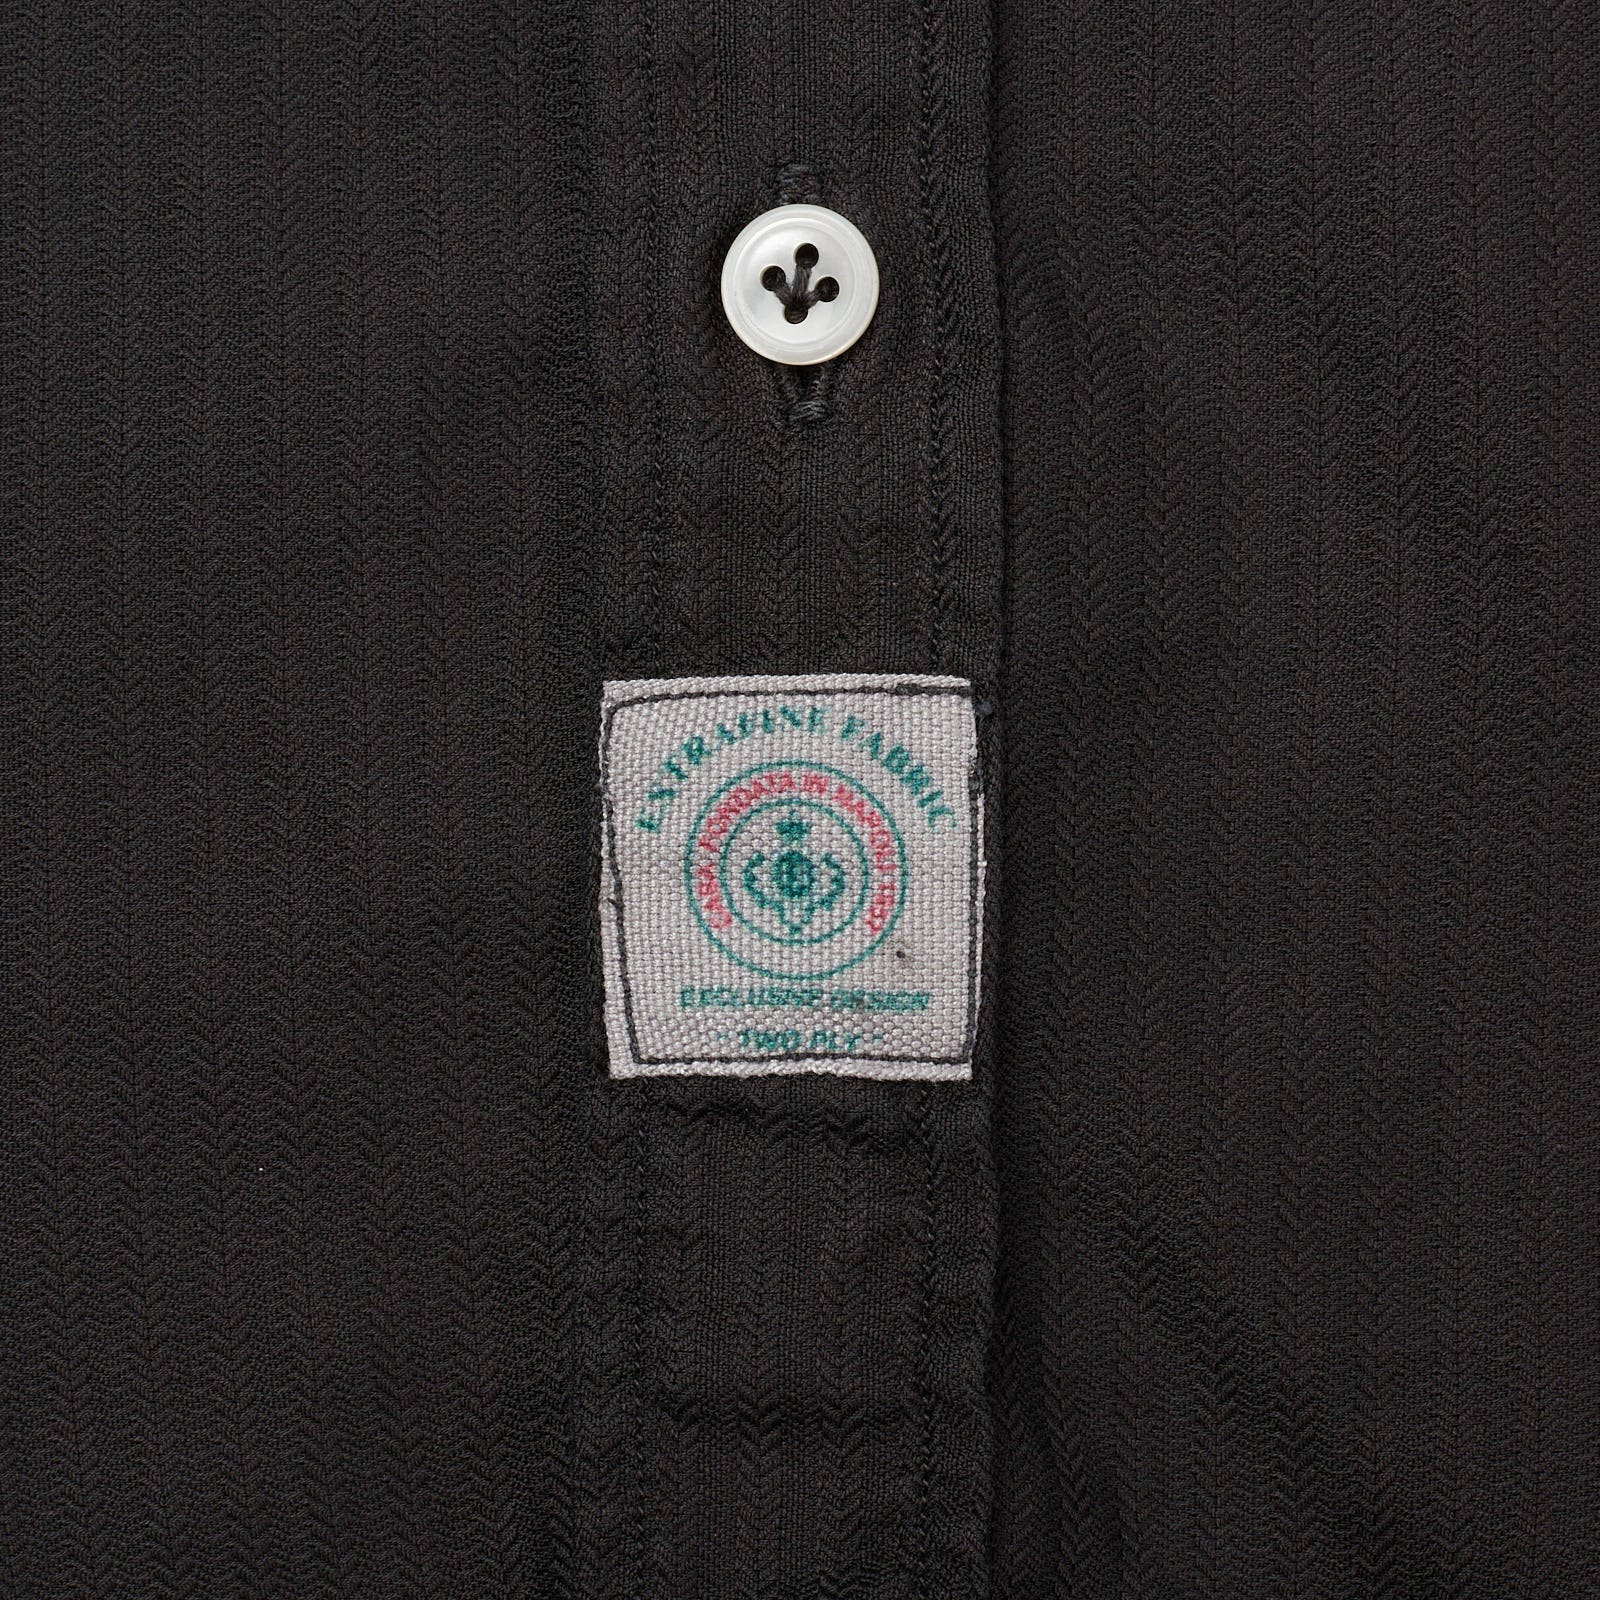 LUIGI BORRELLI Luxury Vintage Black Garment Dyed Cotton Casual Shirt Size M LUIGI BORRELLI